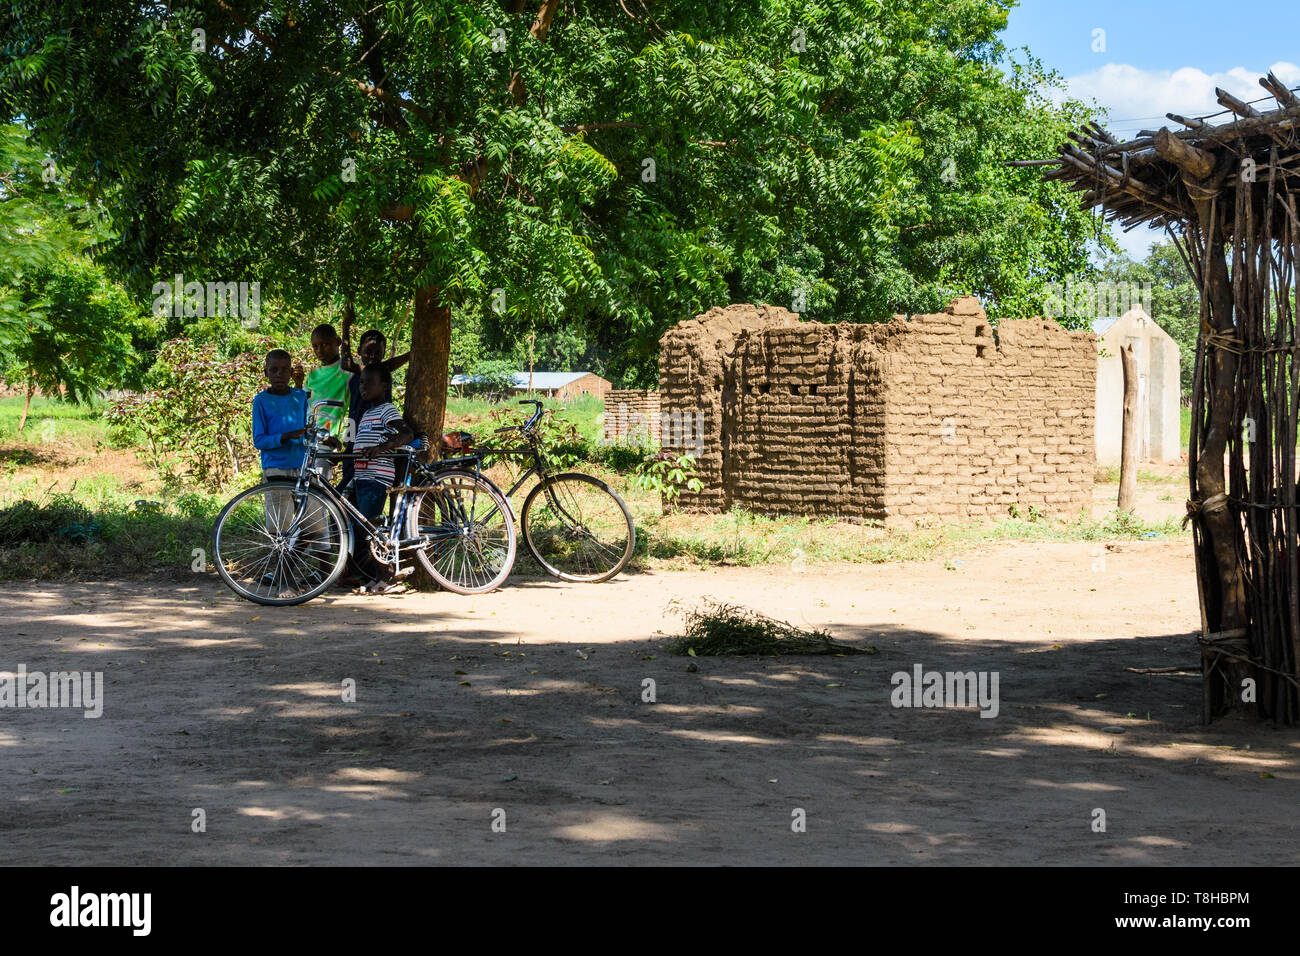 Malawischen Jungen stehen unter dem Schatten eines Baumes guarding mens Fahrräder in einem Dorf in Malawi Chikwawa neben einem Schlamm Gebäude, dessen Dach in verloren hat. Stockfoto